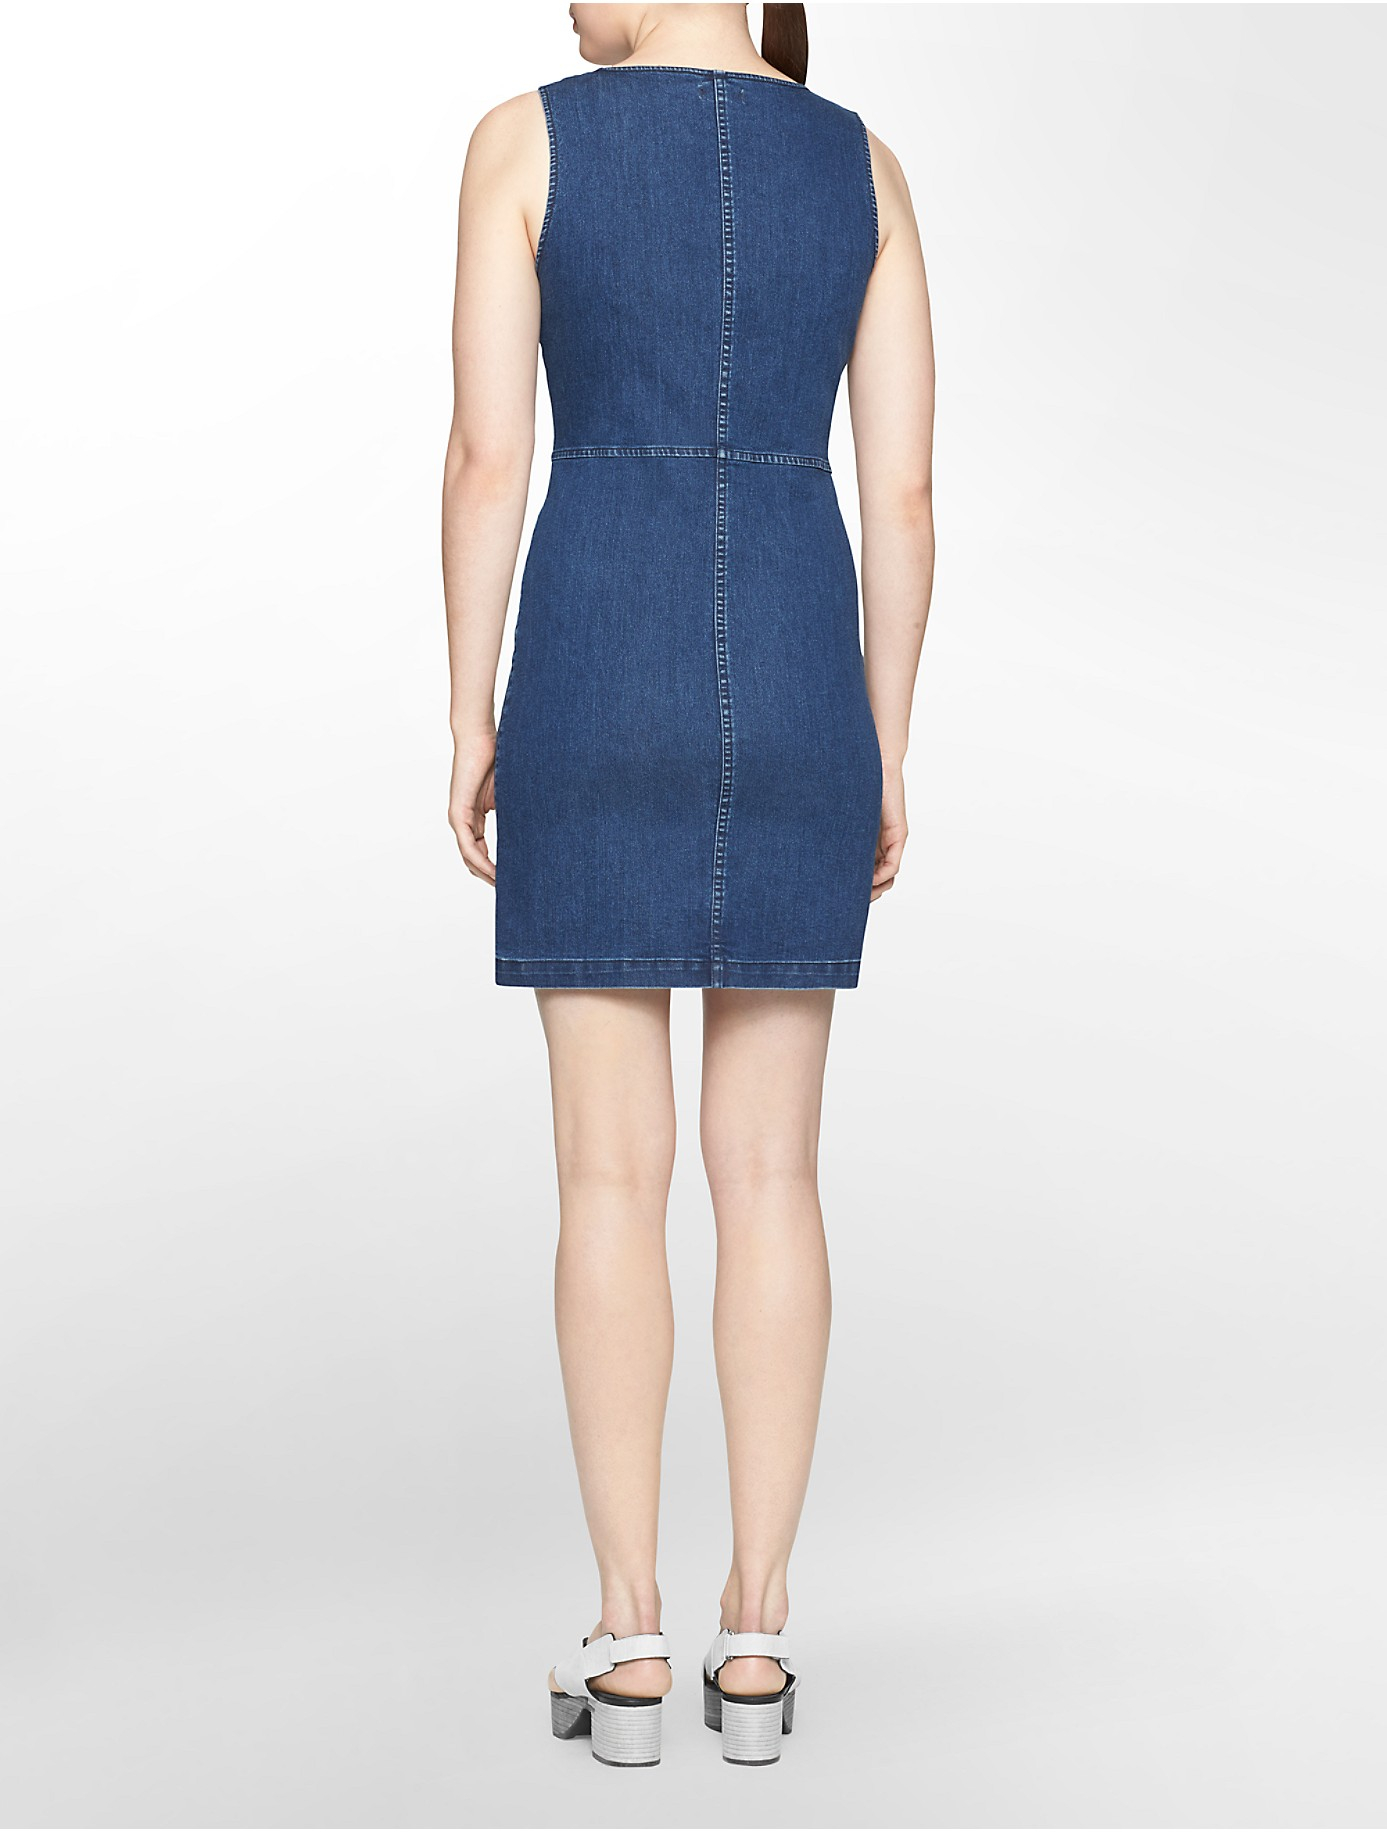 Calvin Klein Jeans Zip Front Denim Sleeveless Dress in Dark Wash (Blue